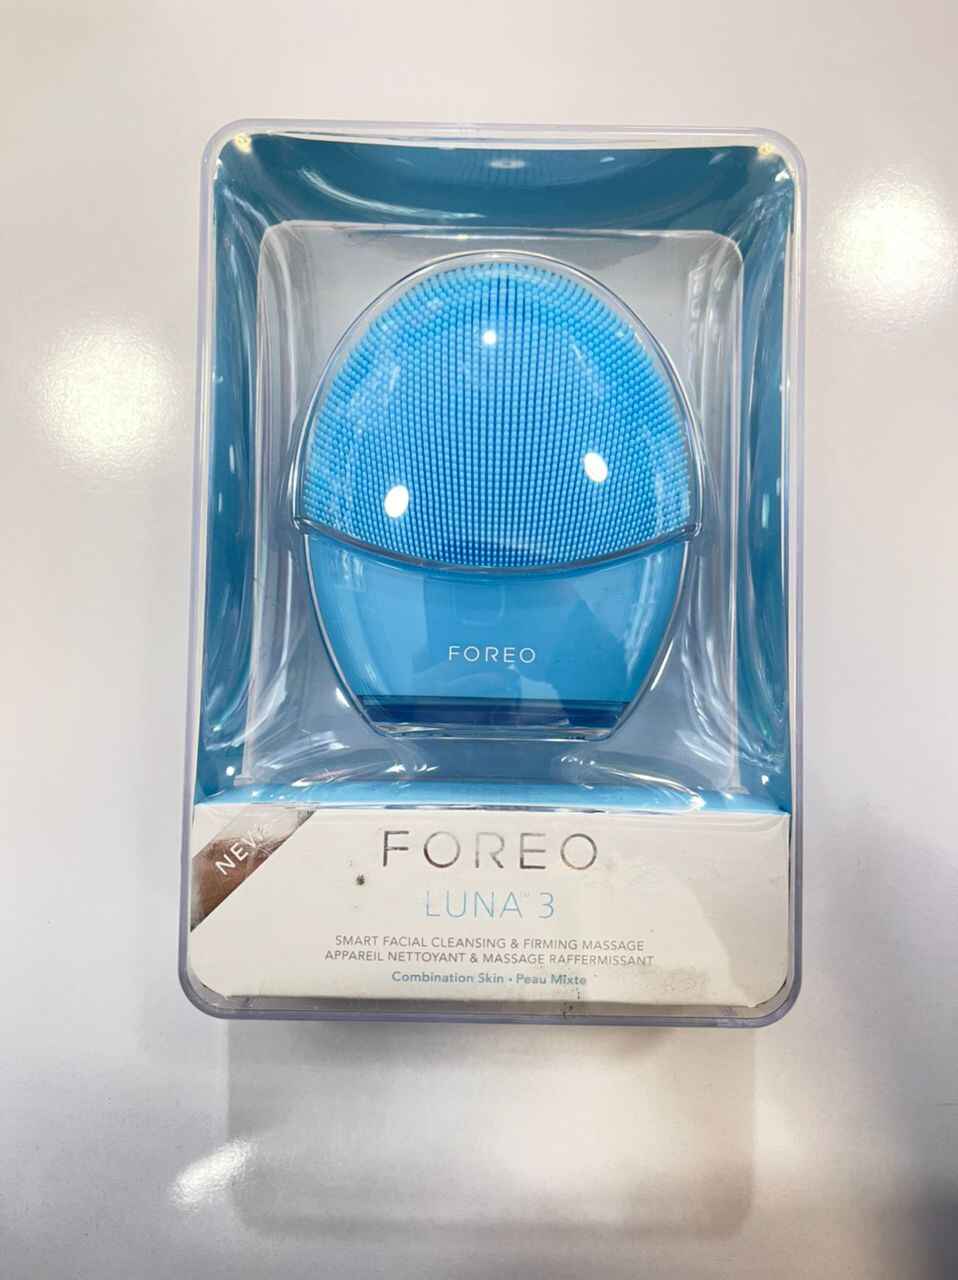 فیس براش فورئو FOREO مدل لونا LUNA 3 | پاکسازی صورت با فناوری T-SONIC، ضد چروک، رنگ آبی